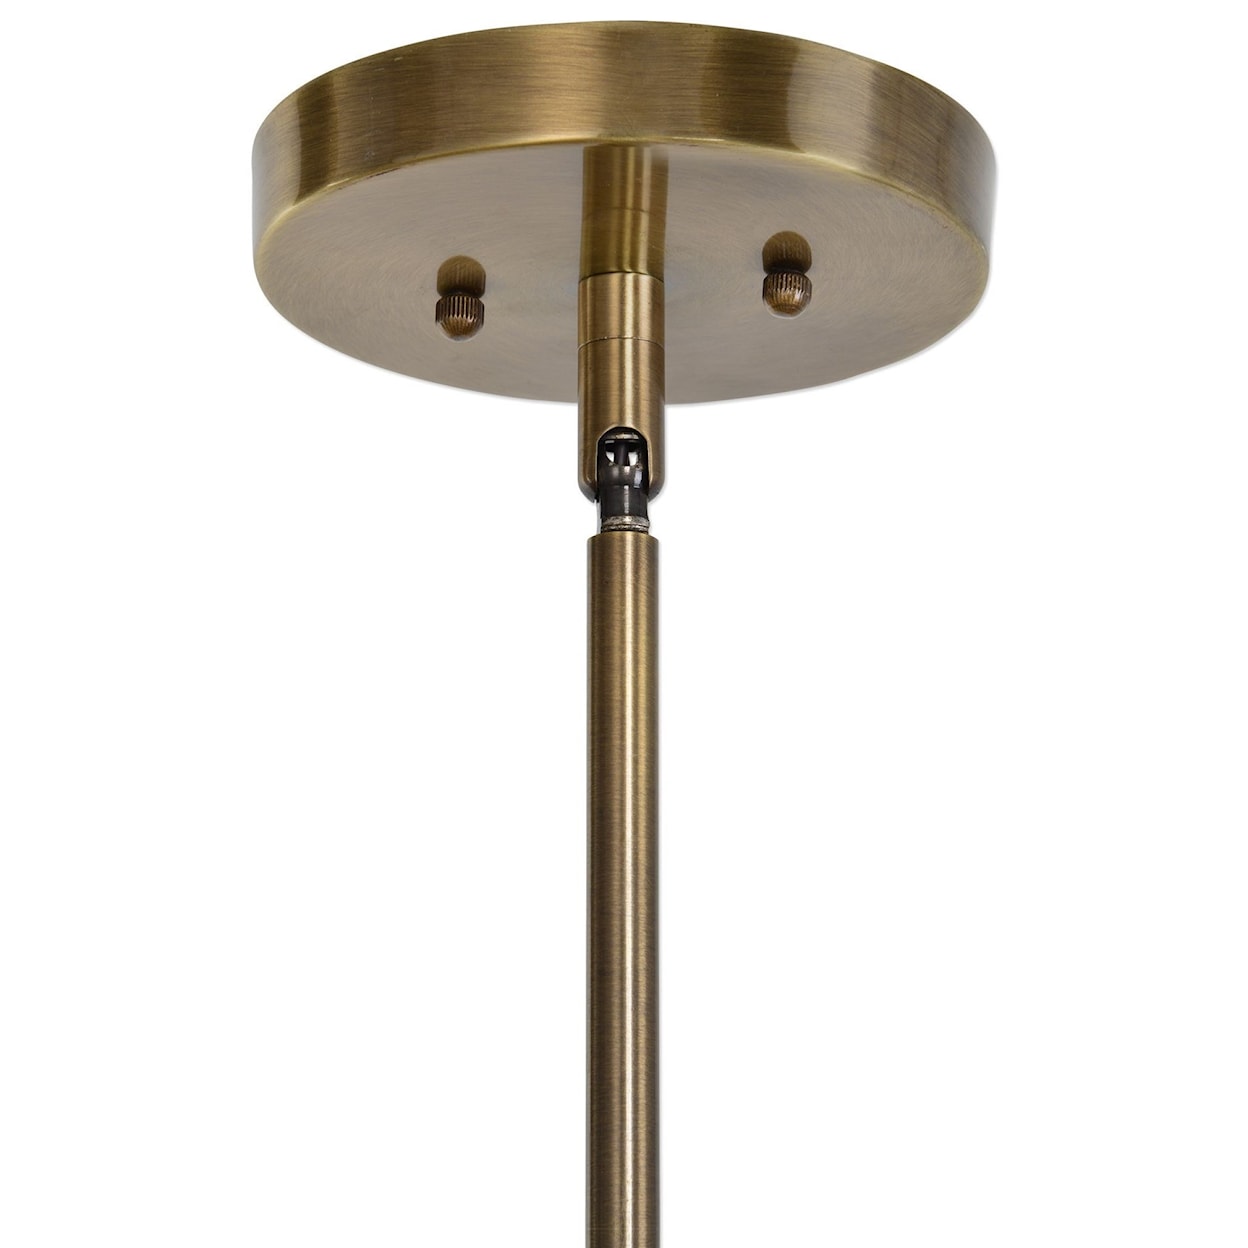 Uttermost Lighting Fixtures - Pendant Lights Namura 1 Light Brass Mini Pendant